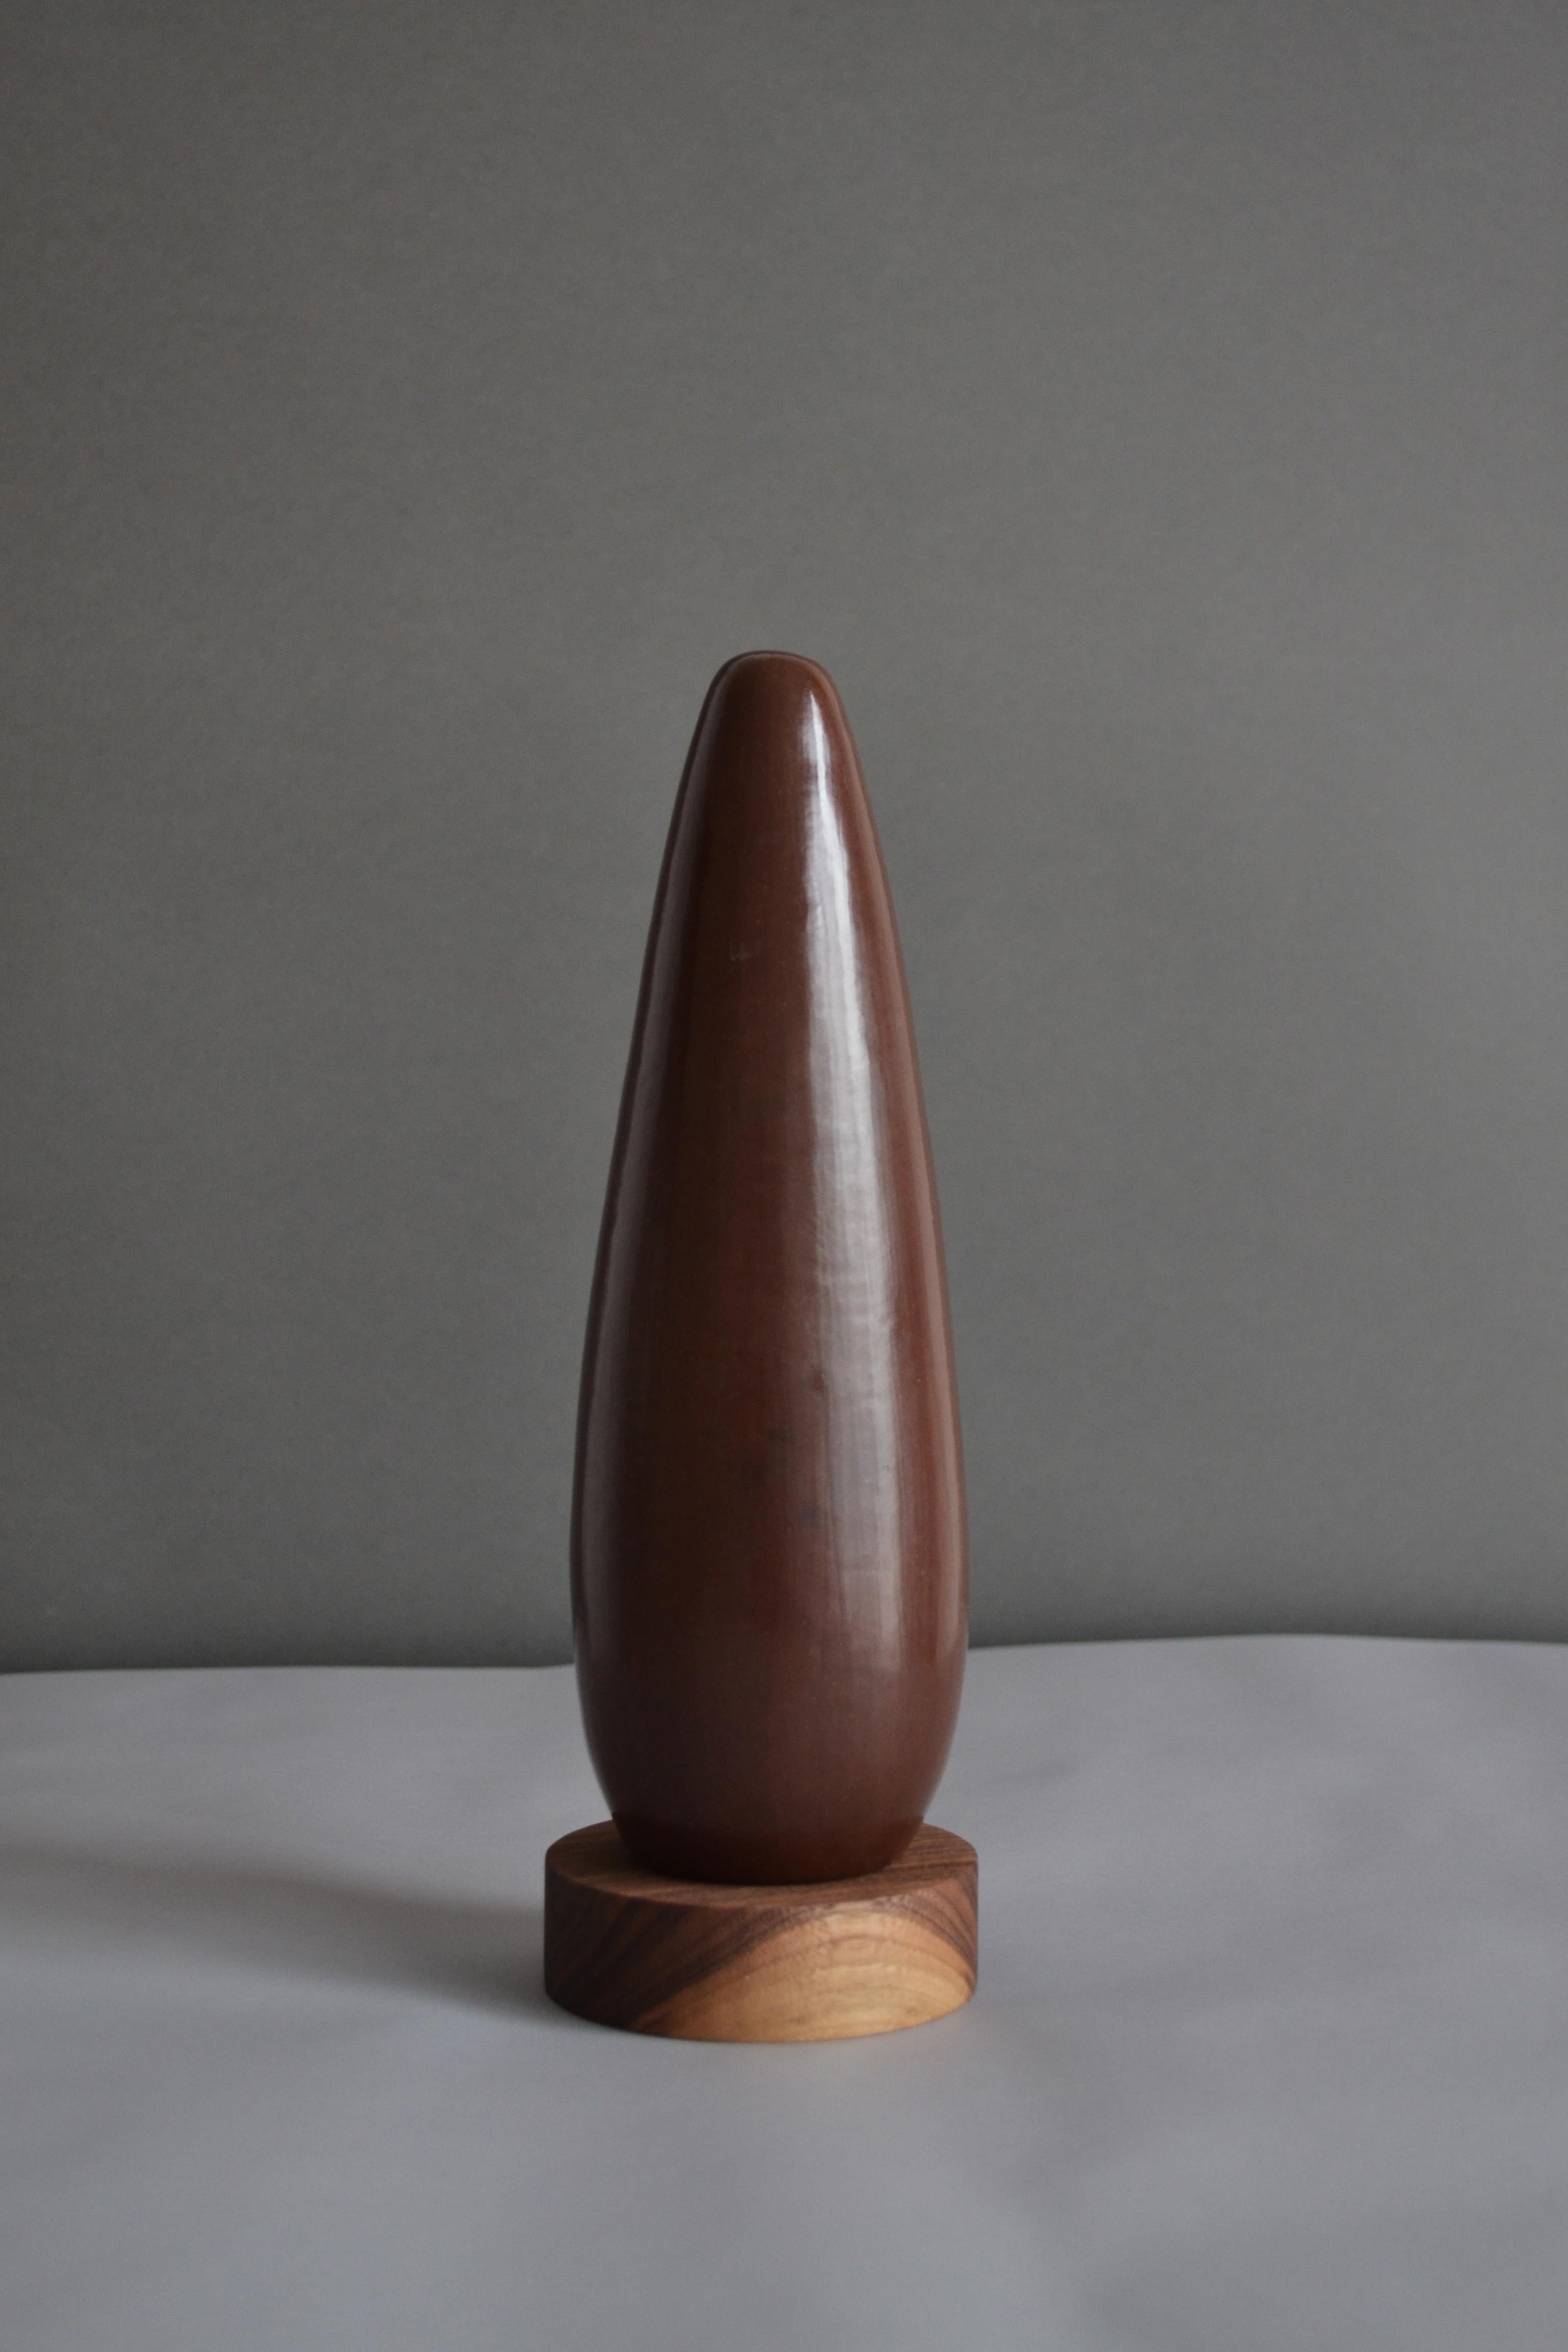 Silo ist eine Skulptur, die ihre Schönheit aus dem Material bezieht, aus dem sie gefertigt ist.
Sie werden aus wildem Ton aus dem Mixteca-Gebirge hergestellt, der 20 Tage lang in Filtern gereinigt wird, bevor er von Hand geformt, mit zerkleinertem